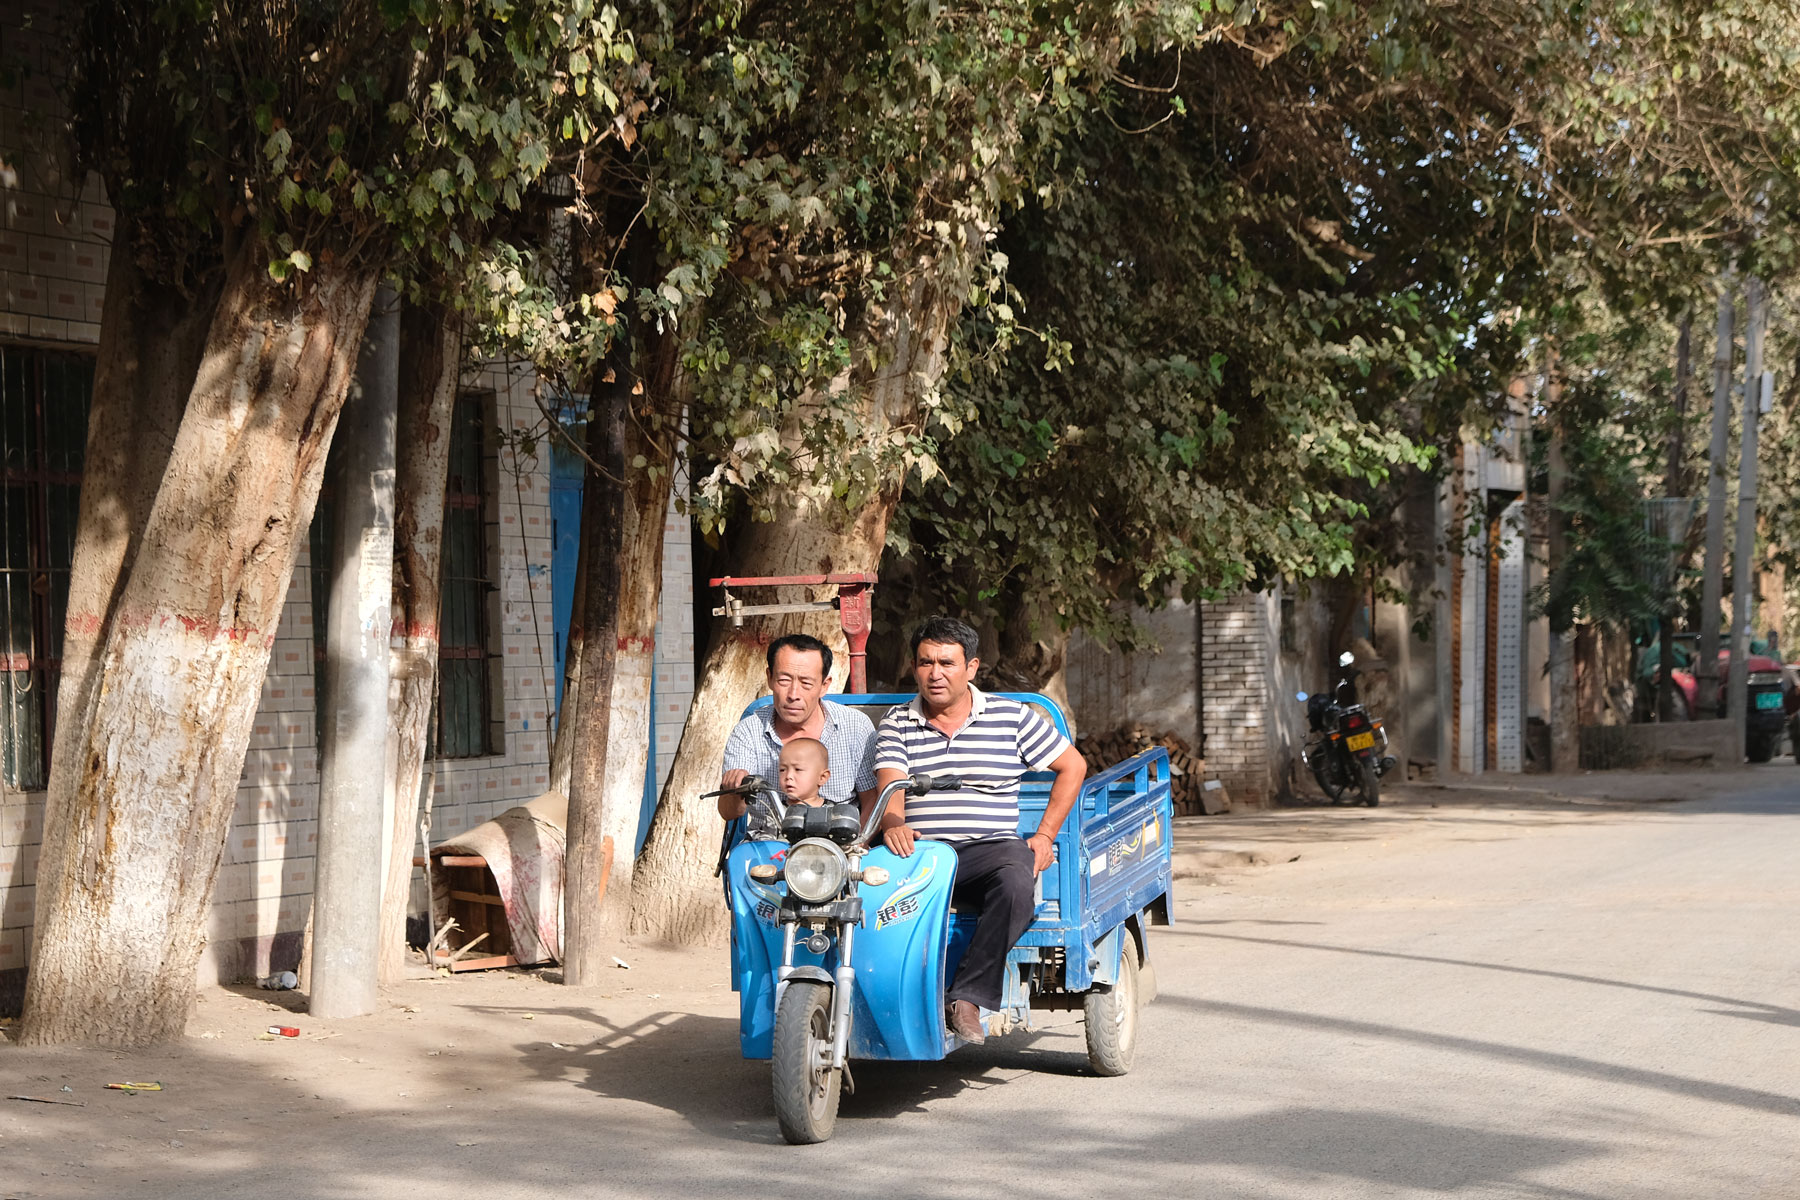 Zwei uigurische Männer und ein Junge fahren auf einem Trike.